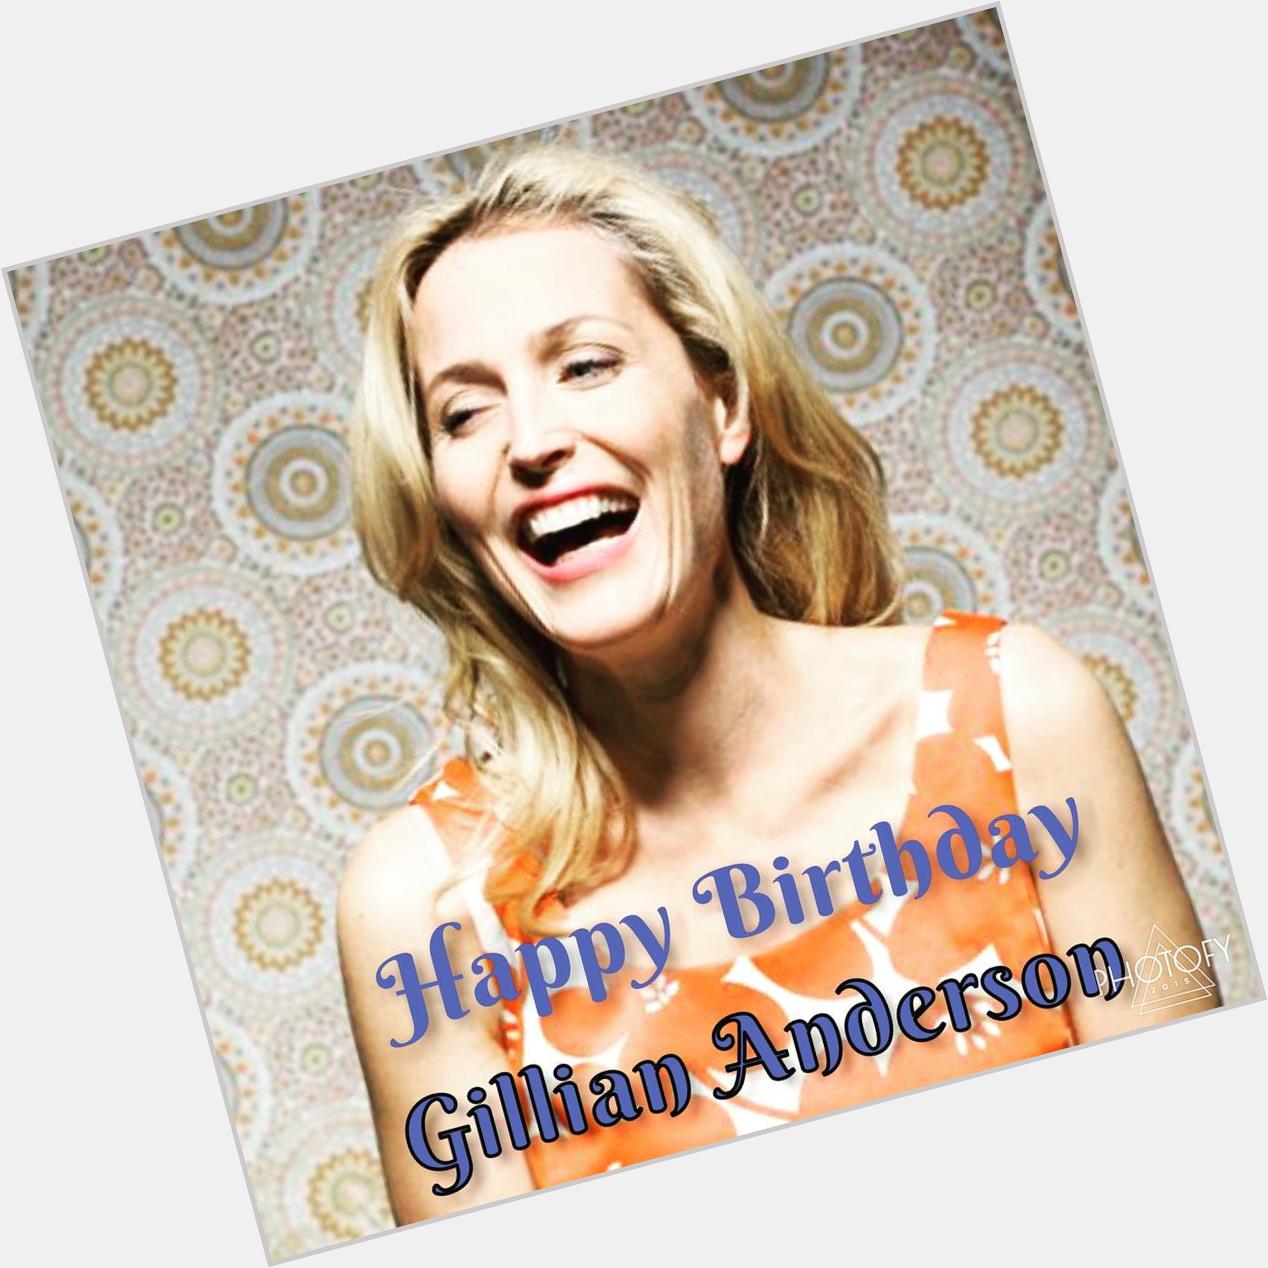 Happy Birthday Gillian Anderson! 